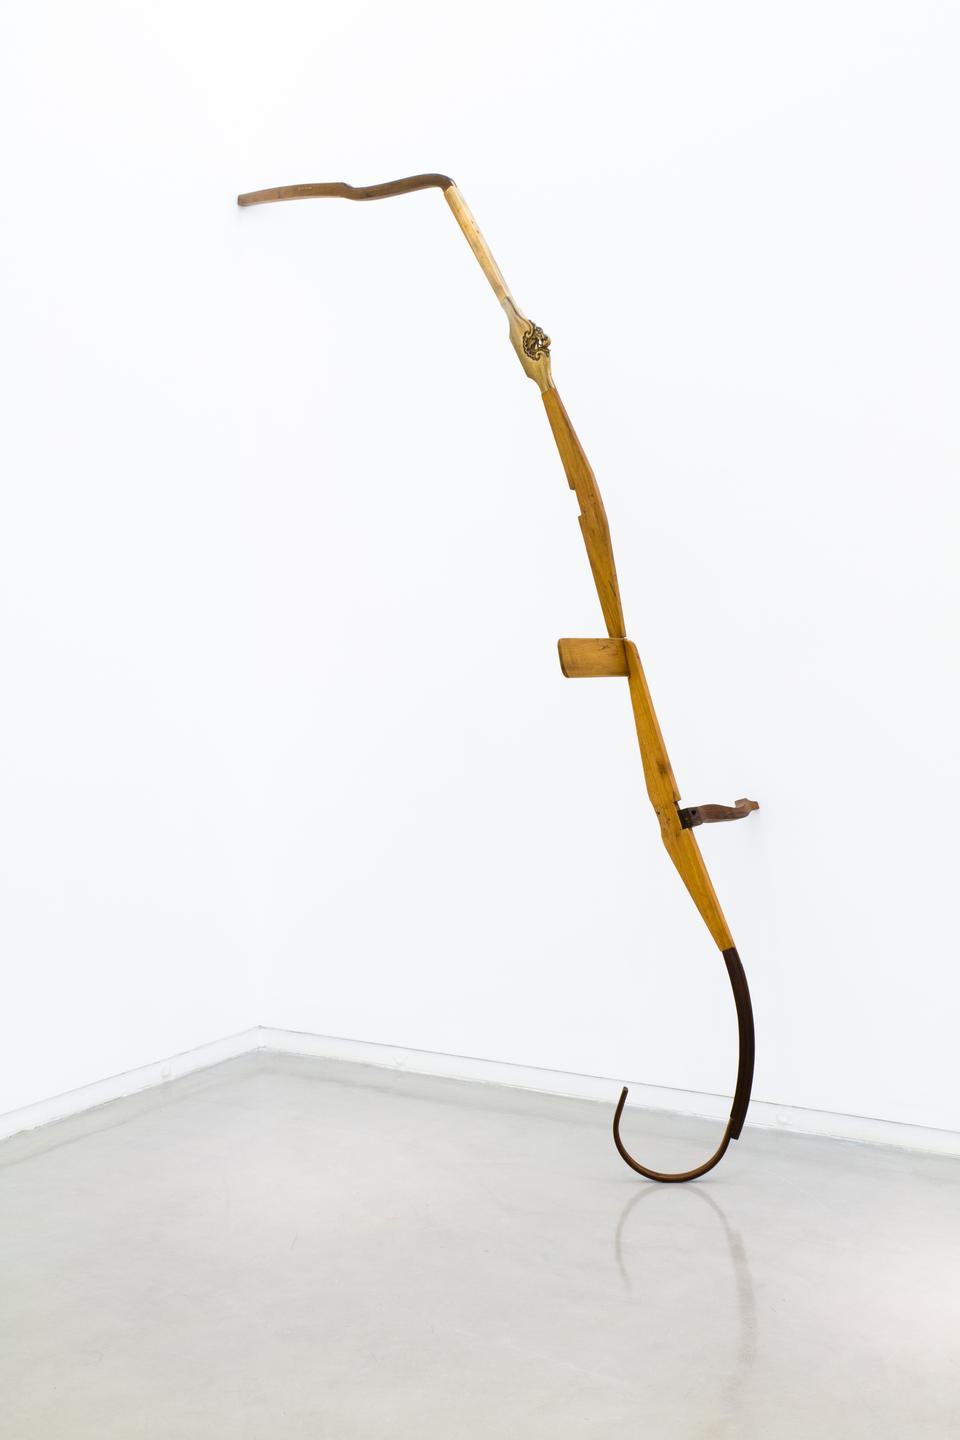 “Retorno”, 2012, madeira, 254 x 182 x 69 cm